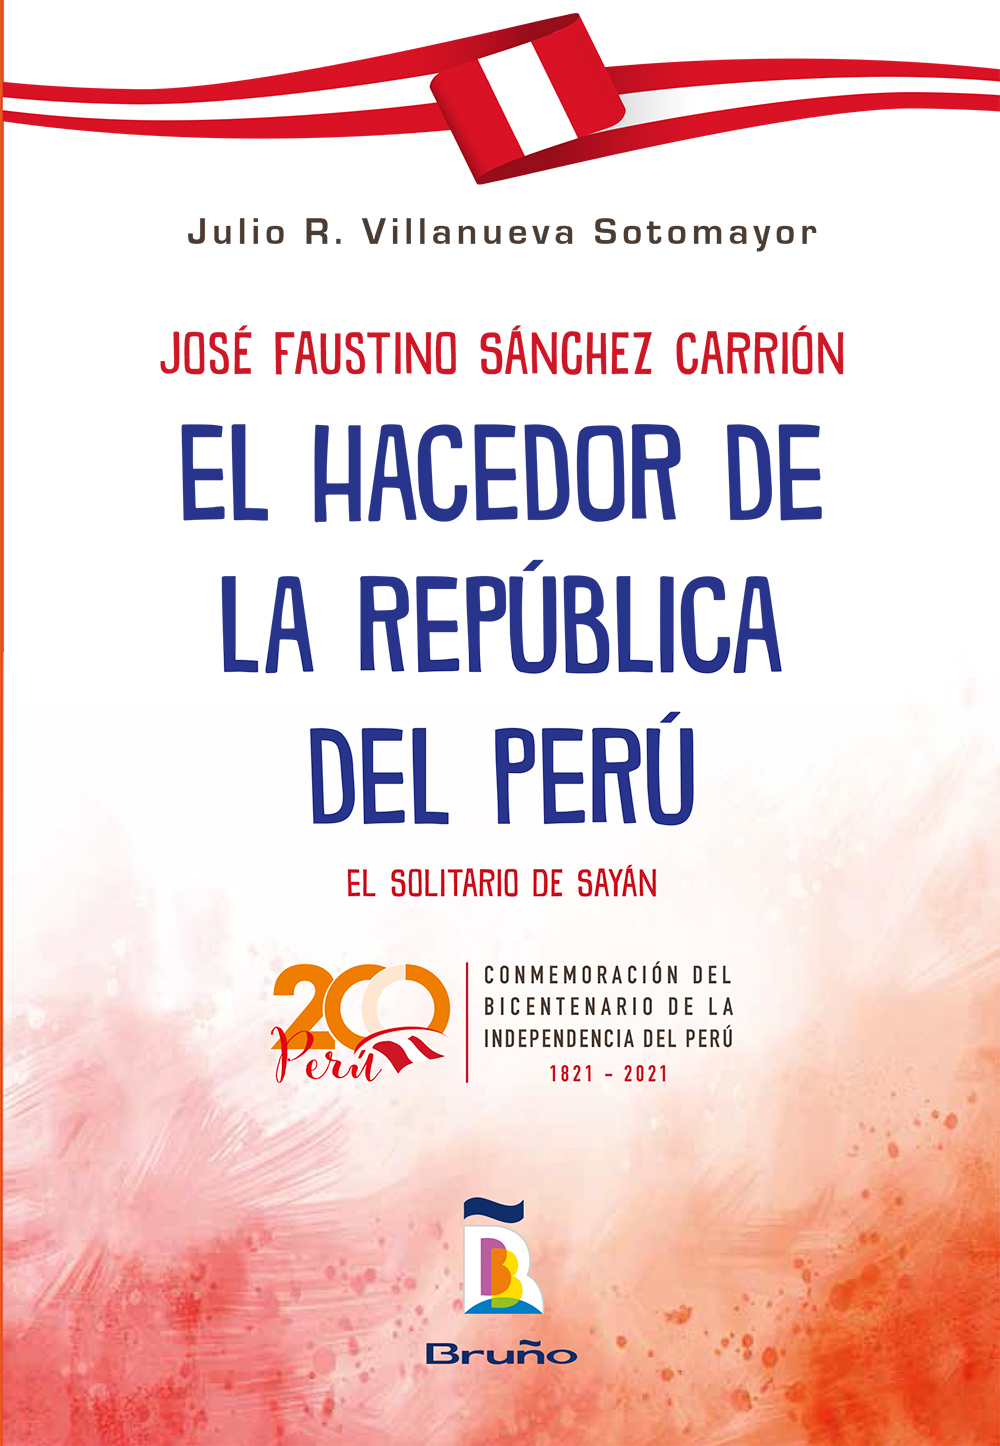 José Faustino Sánchez Carrión - El hacedor de la República del Perú